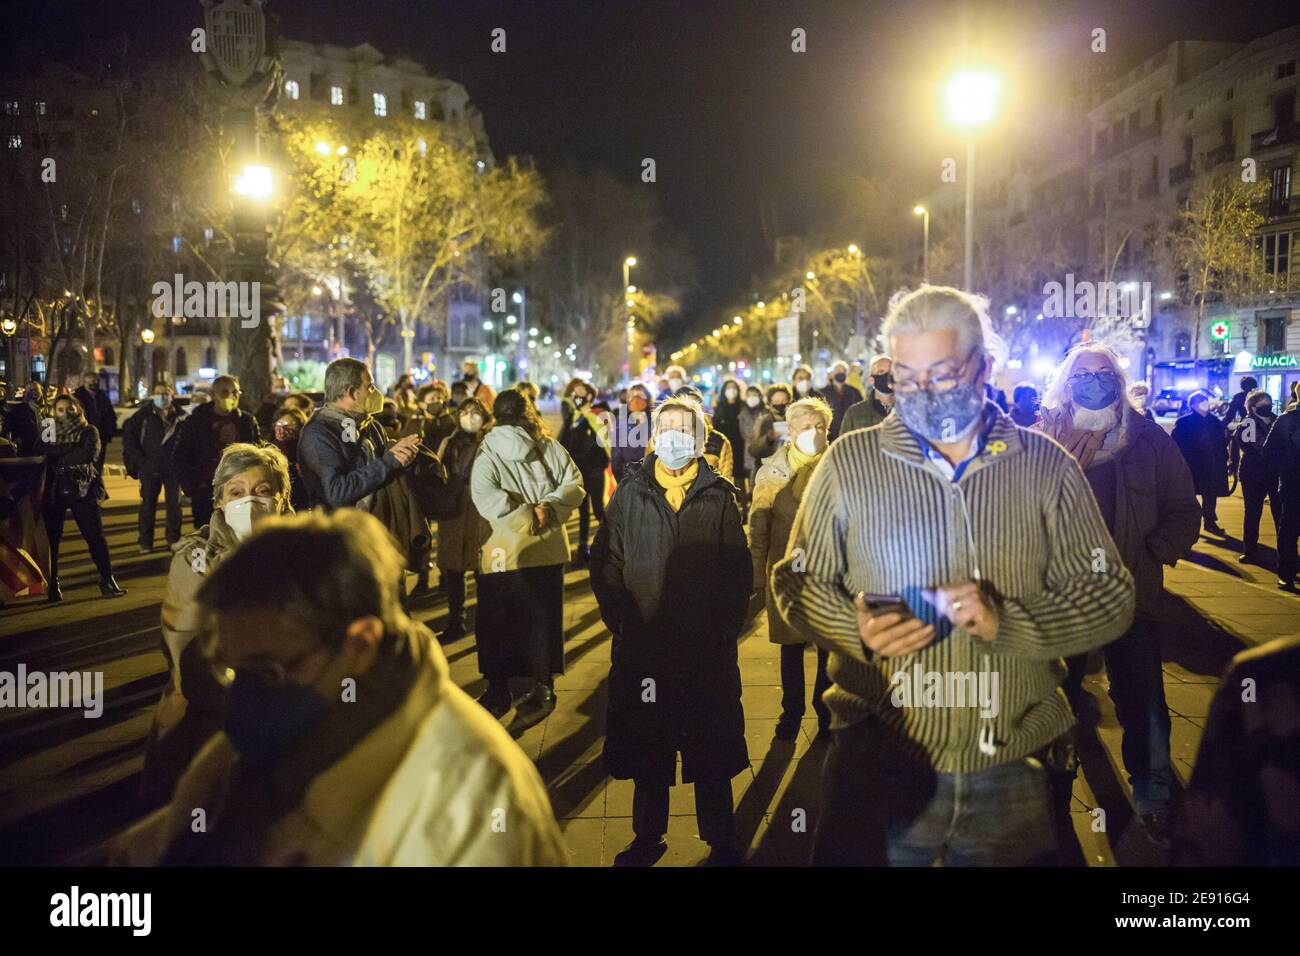 Maskierte Demonstranten hören während der Demonstration Reden.katalanische Unabhängigkeitsgruppen veranstalteten an verschiedenen Stellen in ganz Katalonien Demonstrationen zur Unterstützung von politischen Gefangenen, die vom Obersten Gerichtshof Spaniens wegen Volksverhetzung verurteilt wurden. Nachdem das Provinzwahlgremium von Barcelona am 28. Januar entschieden hatte, dass es die Demonstrationen "Wochenmontagen", die zwischen dem 1. Und 8. Februar zur Unterstützung politischer Gefangener abgehalten wurden, nicht genehmigte, die mit dem Wahlkampf der Generalitat von Katalonien zusammenfielen. Stockfoto